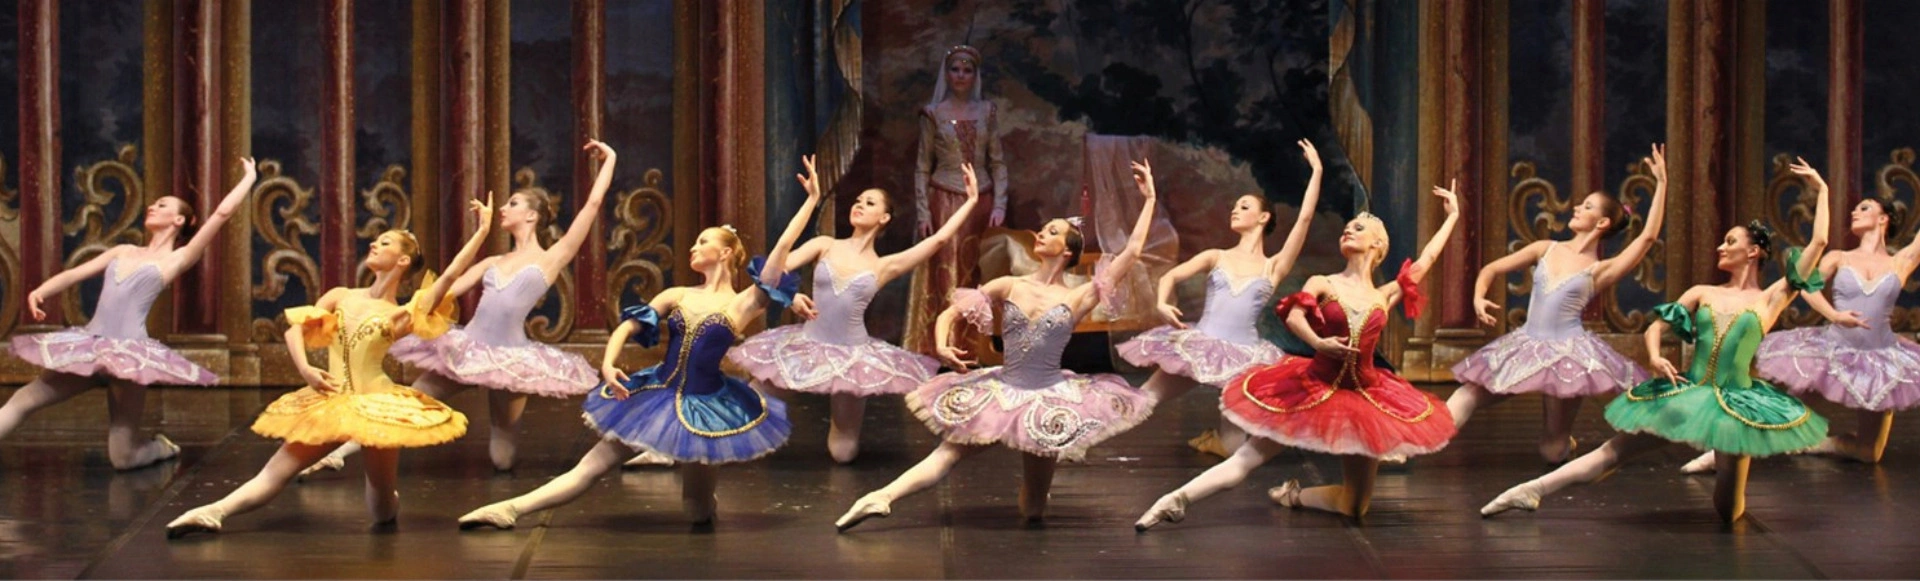 большой театр балет спящая красавица